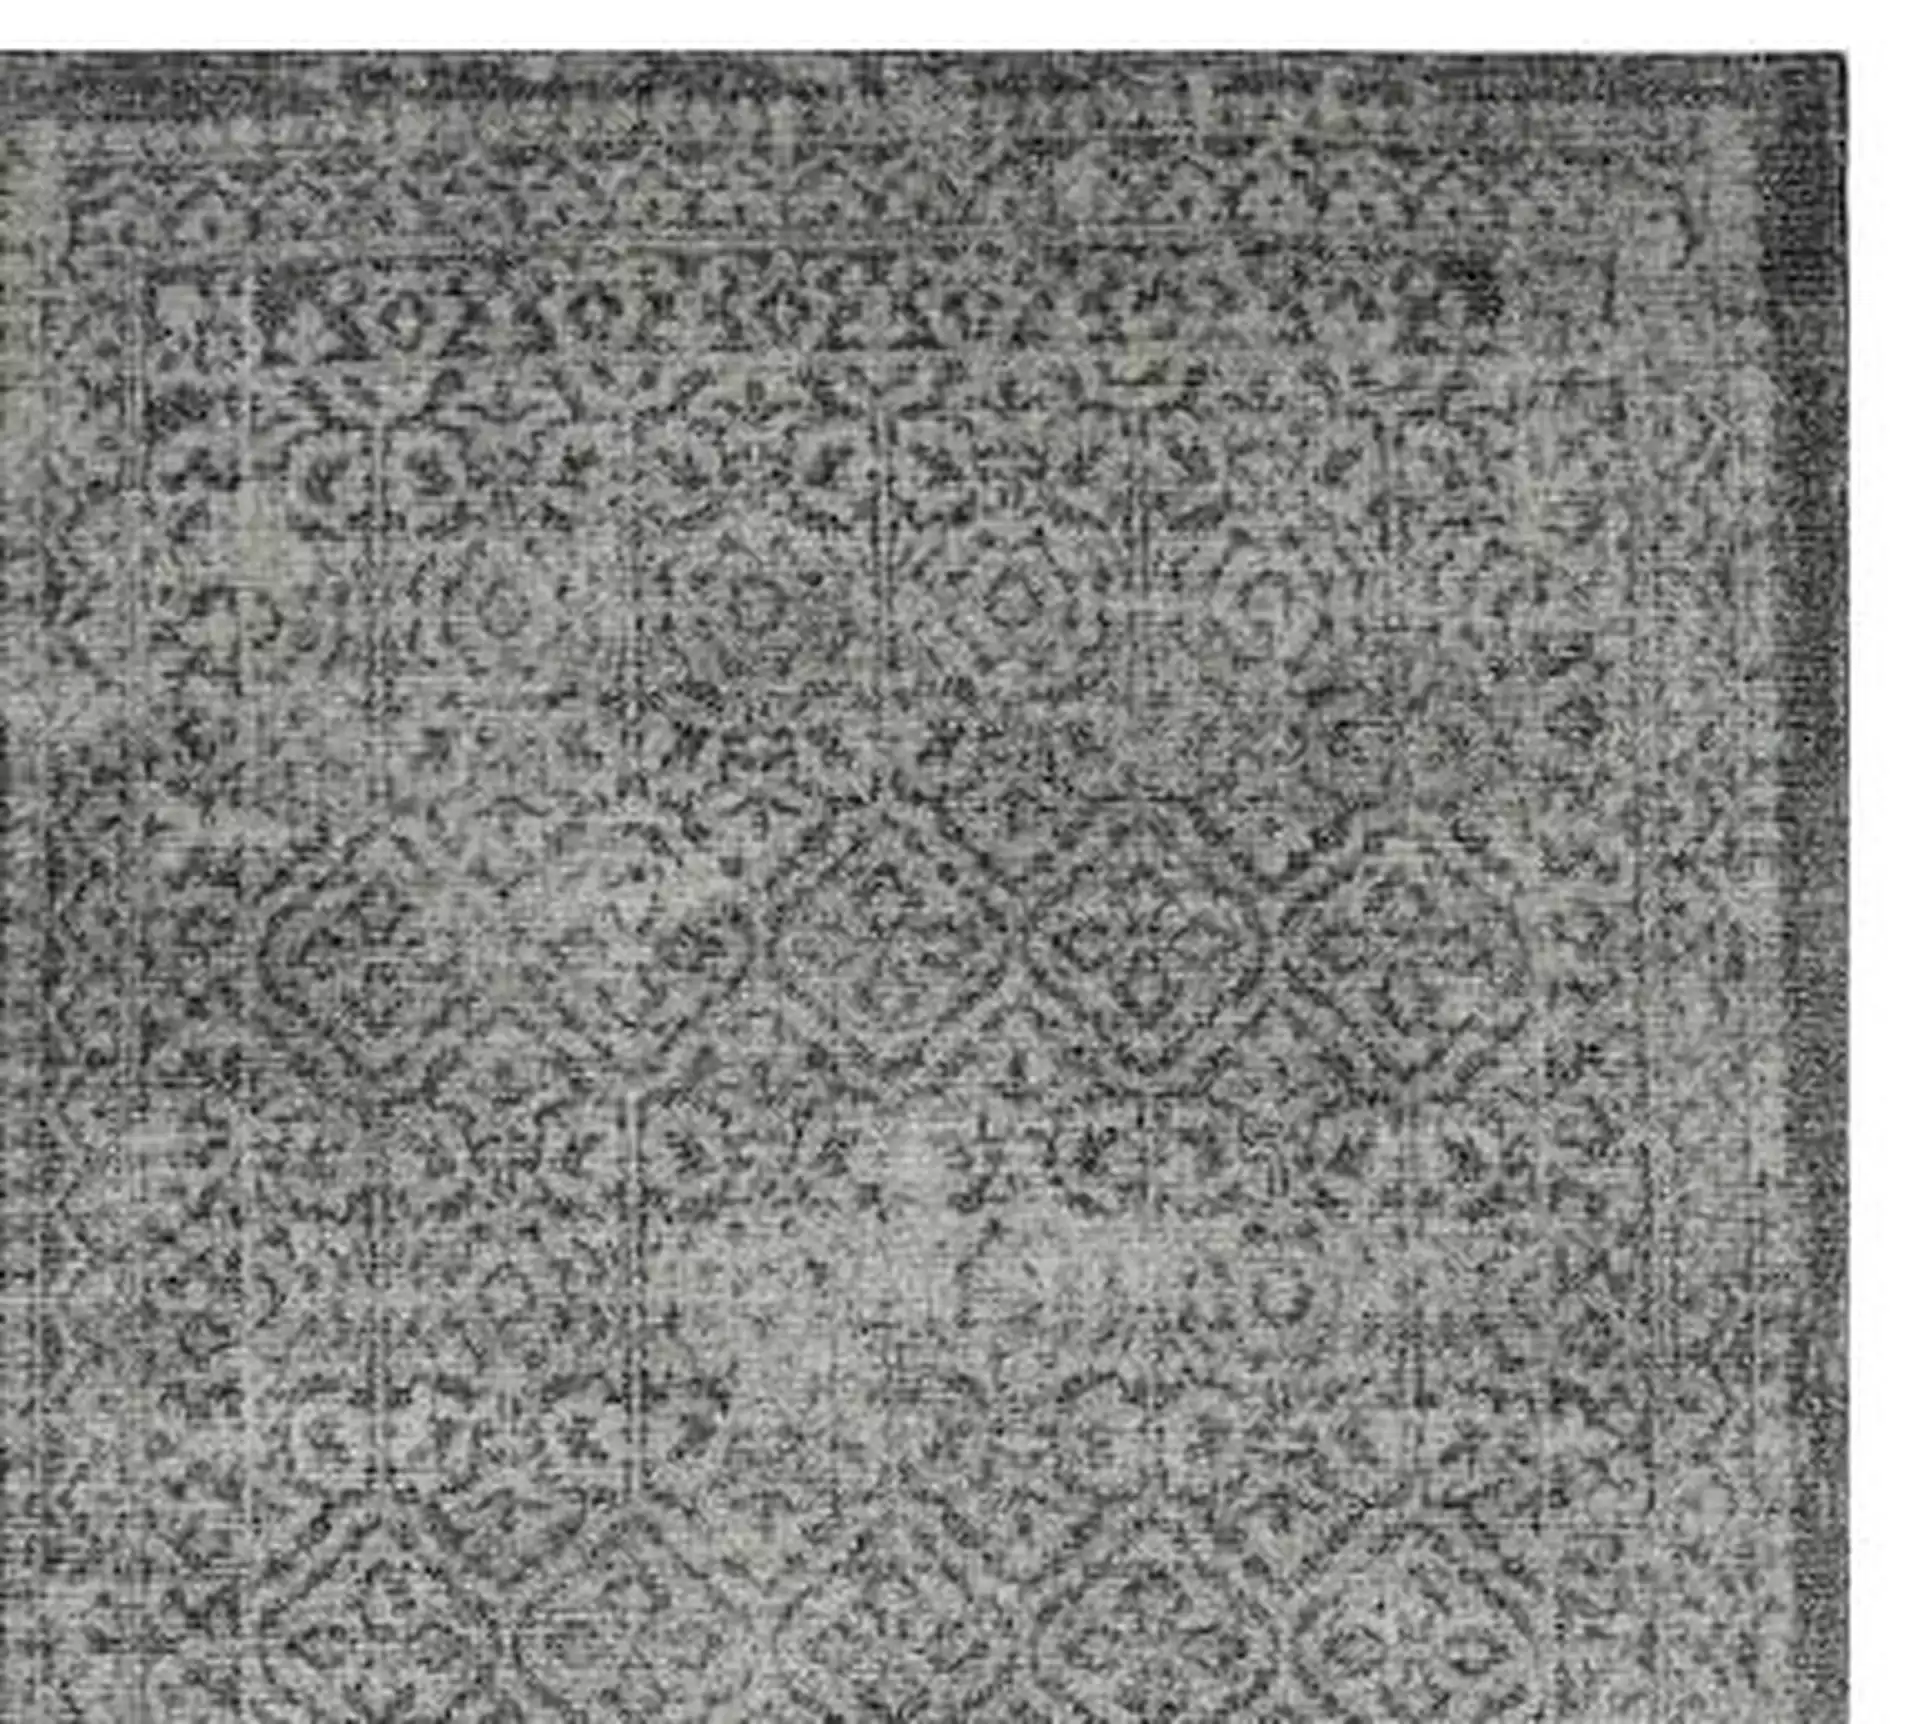 Prehn Printed Handwoven Rug, 3' x 5', Charcoal